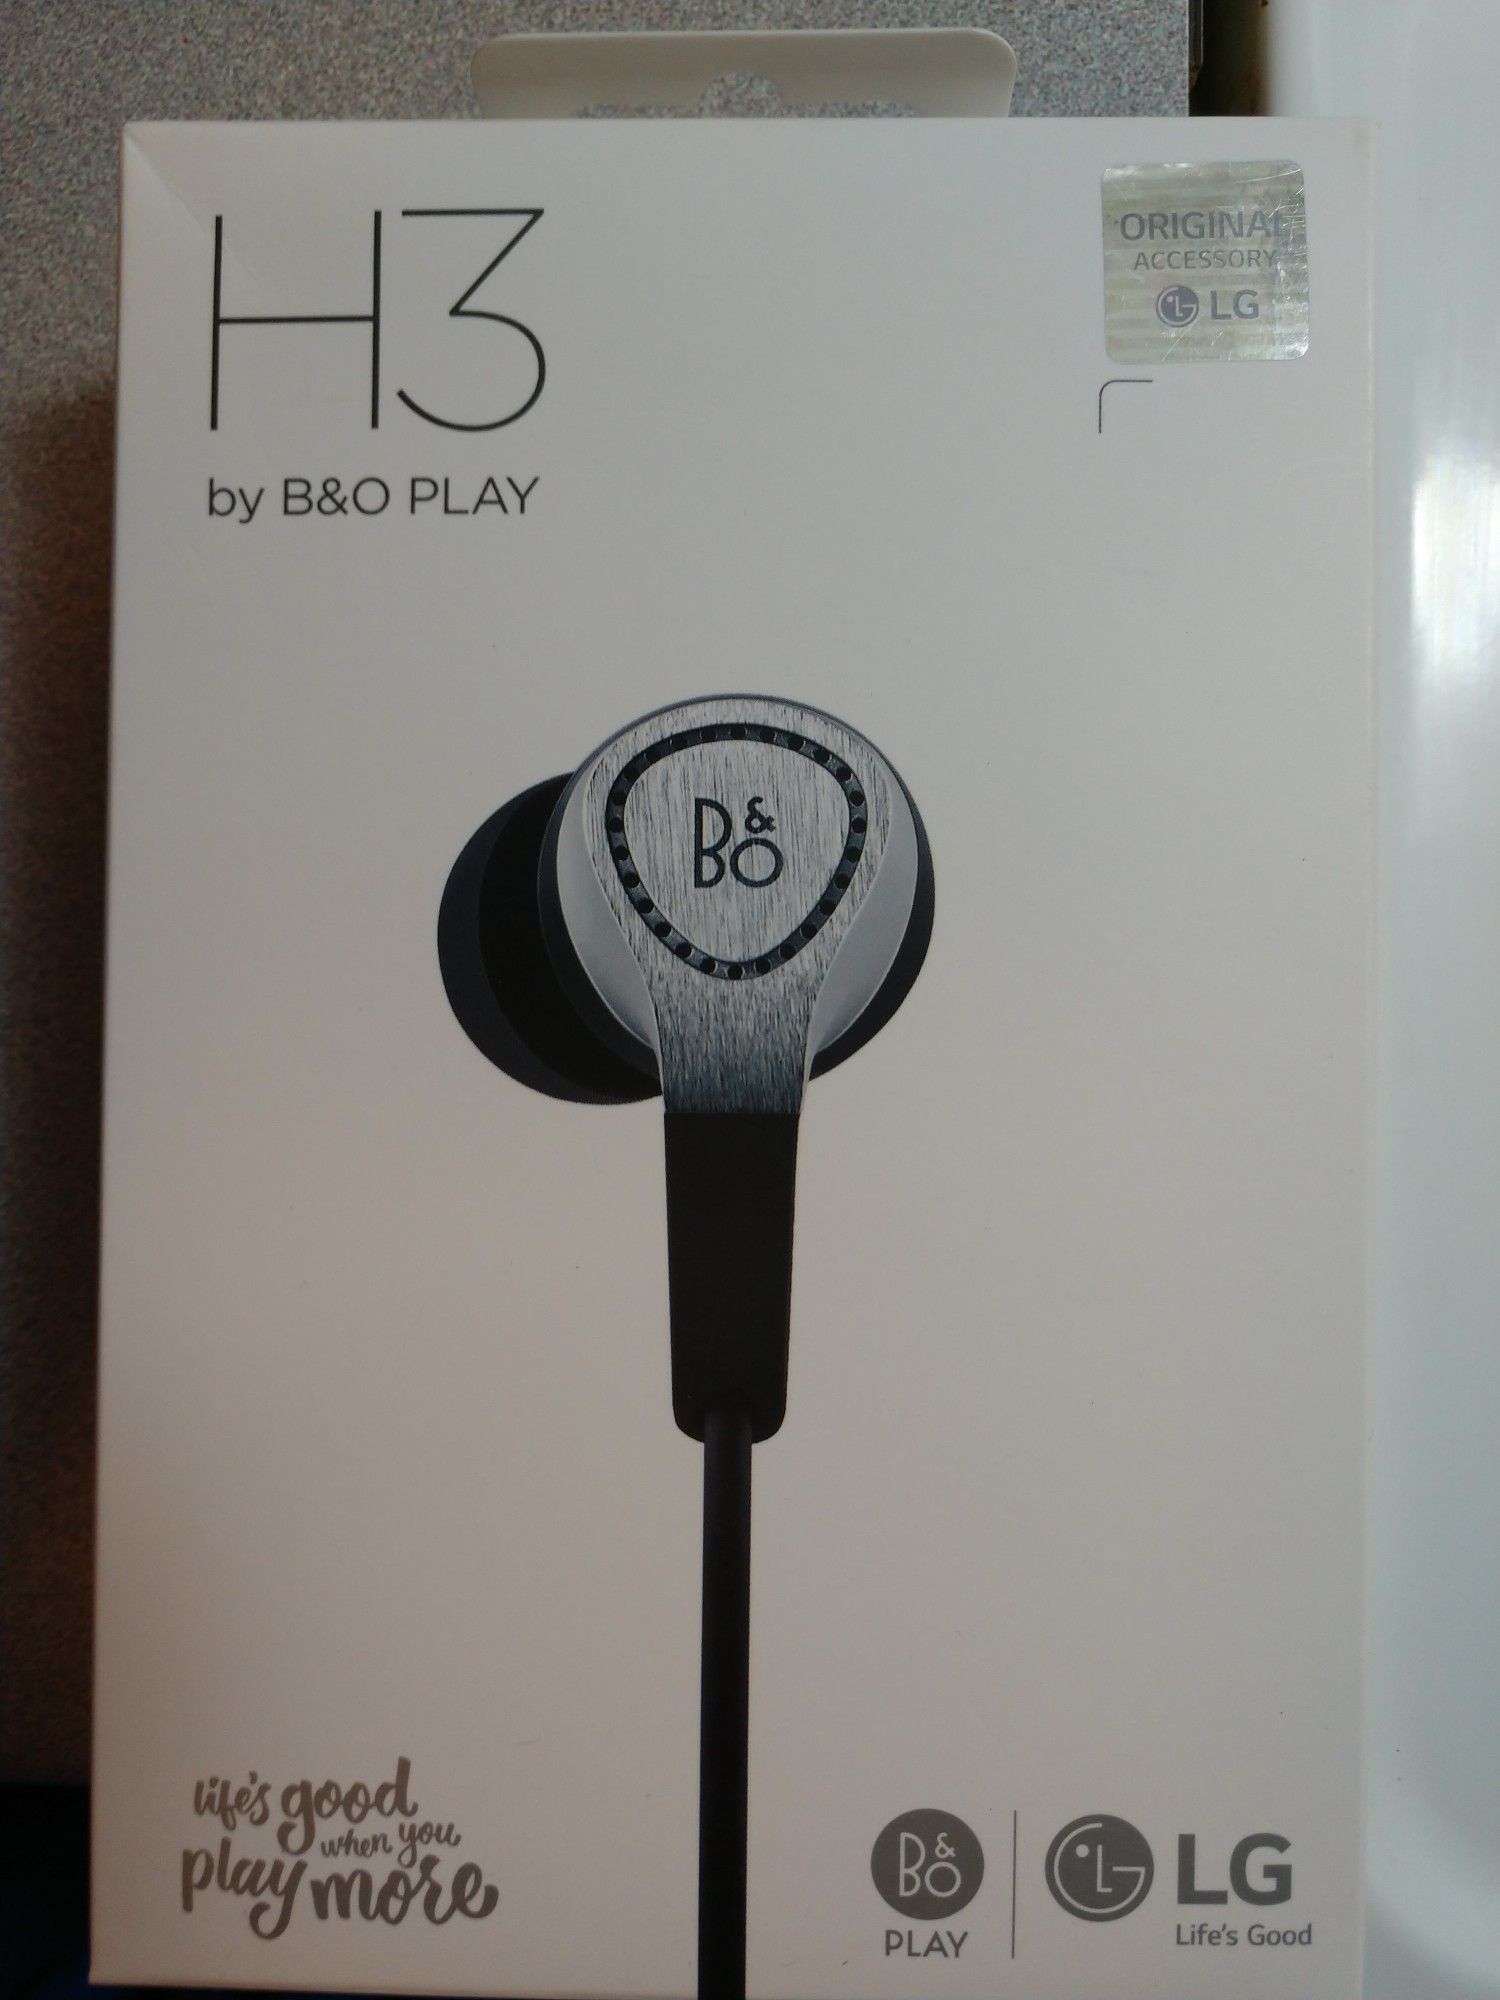 H3 By B&O Play